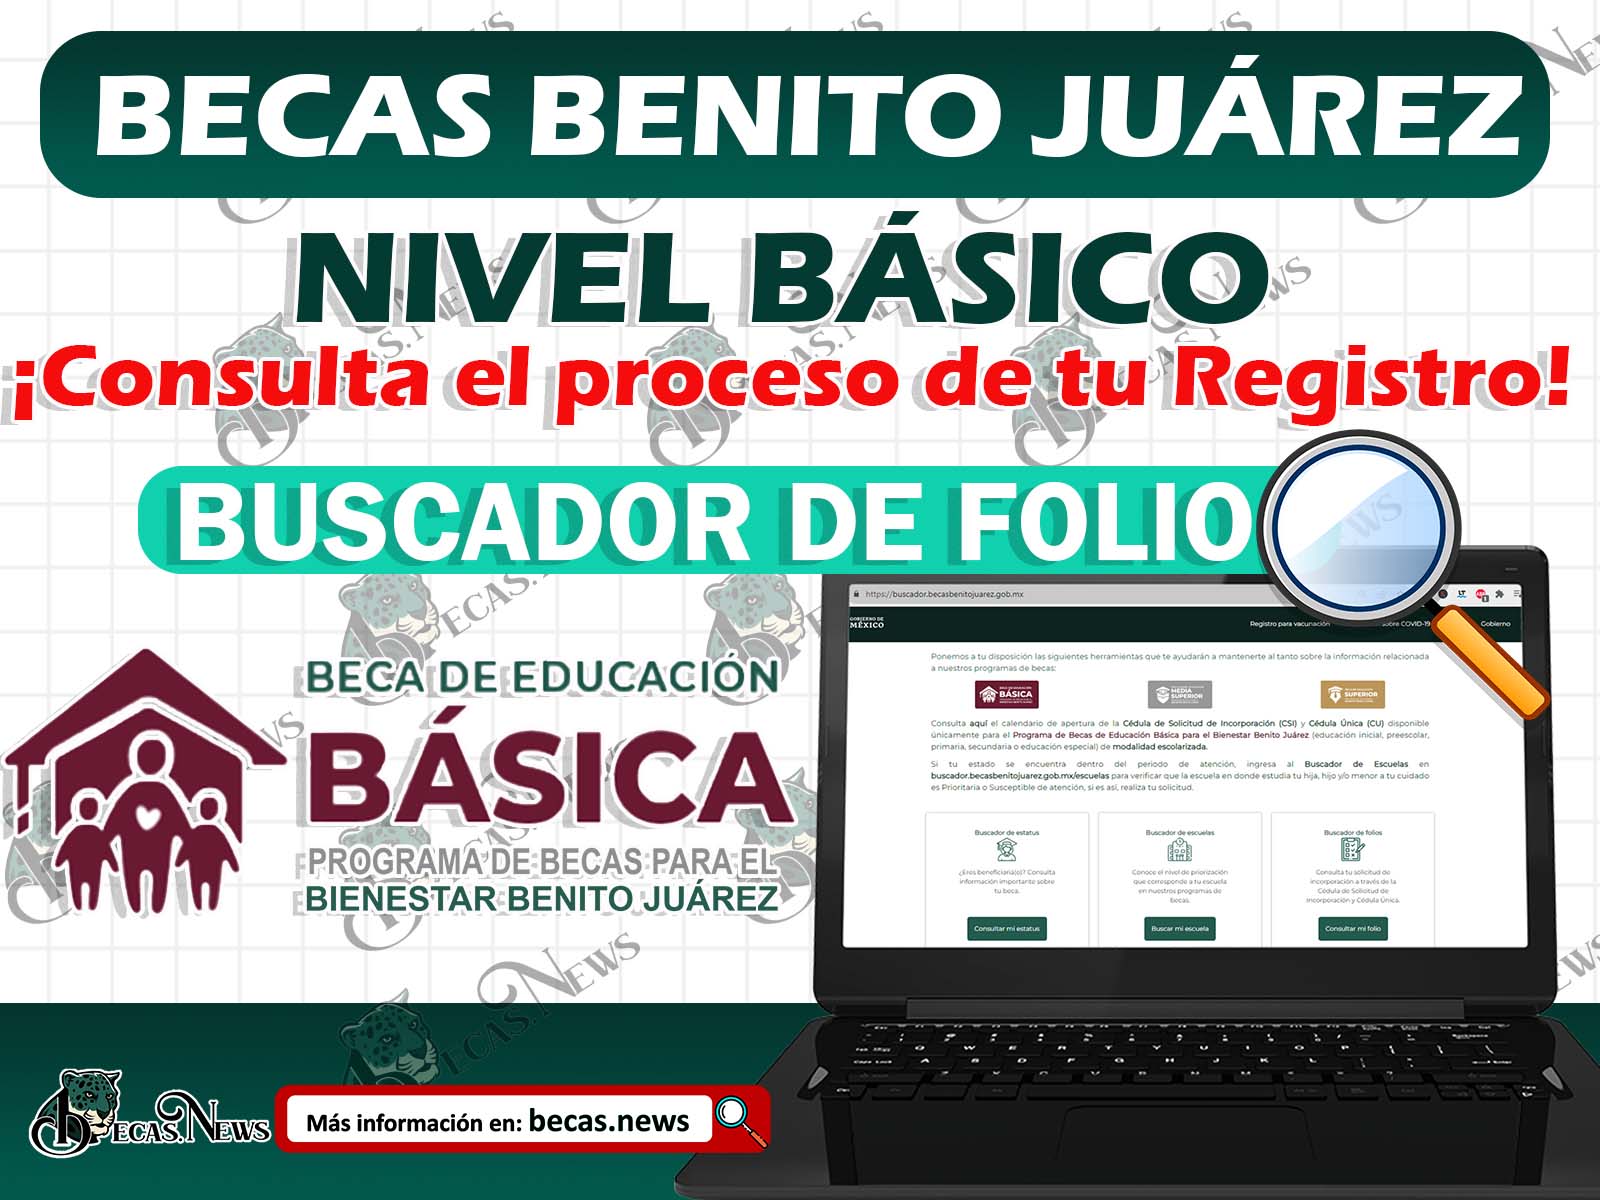 ¡Buenas noticias! Solicitaste una de las Becas Benito Juárez Consulta el Proceso de tu Registro de Esta forma